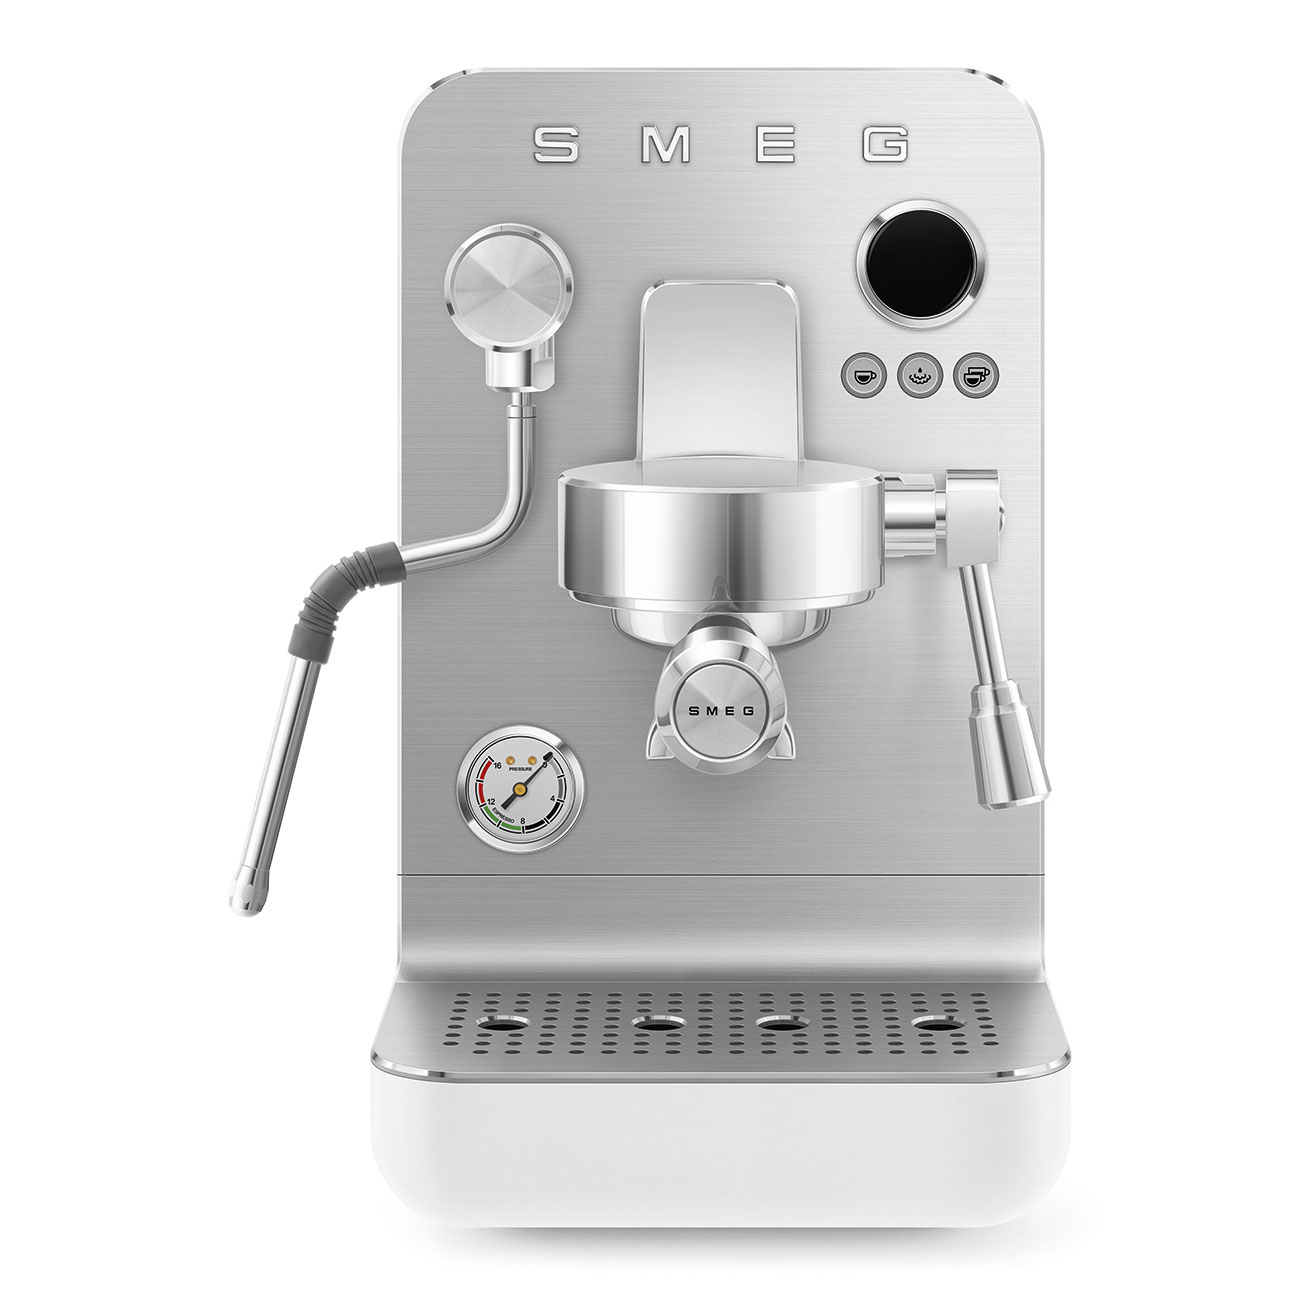 White Minipro espresso coffee machine_1